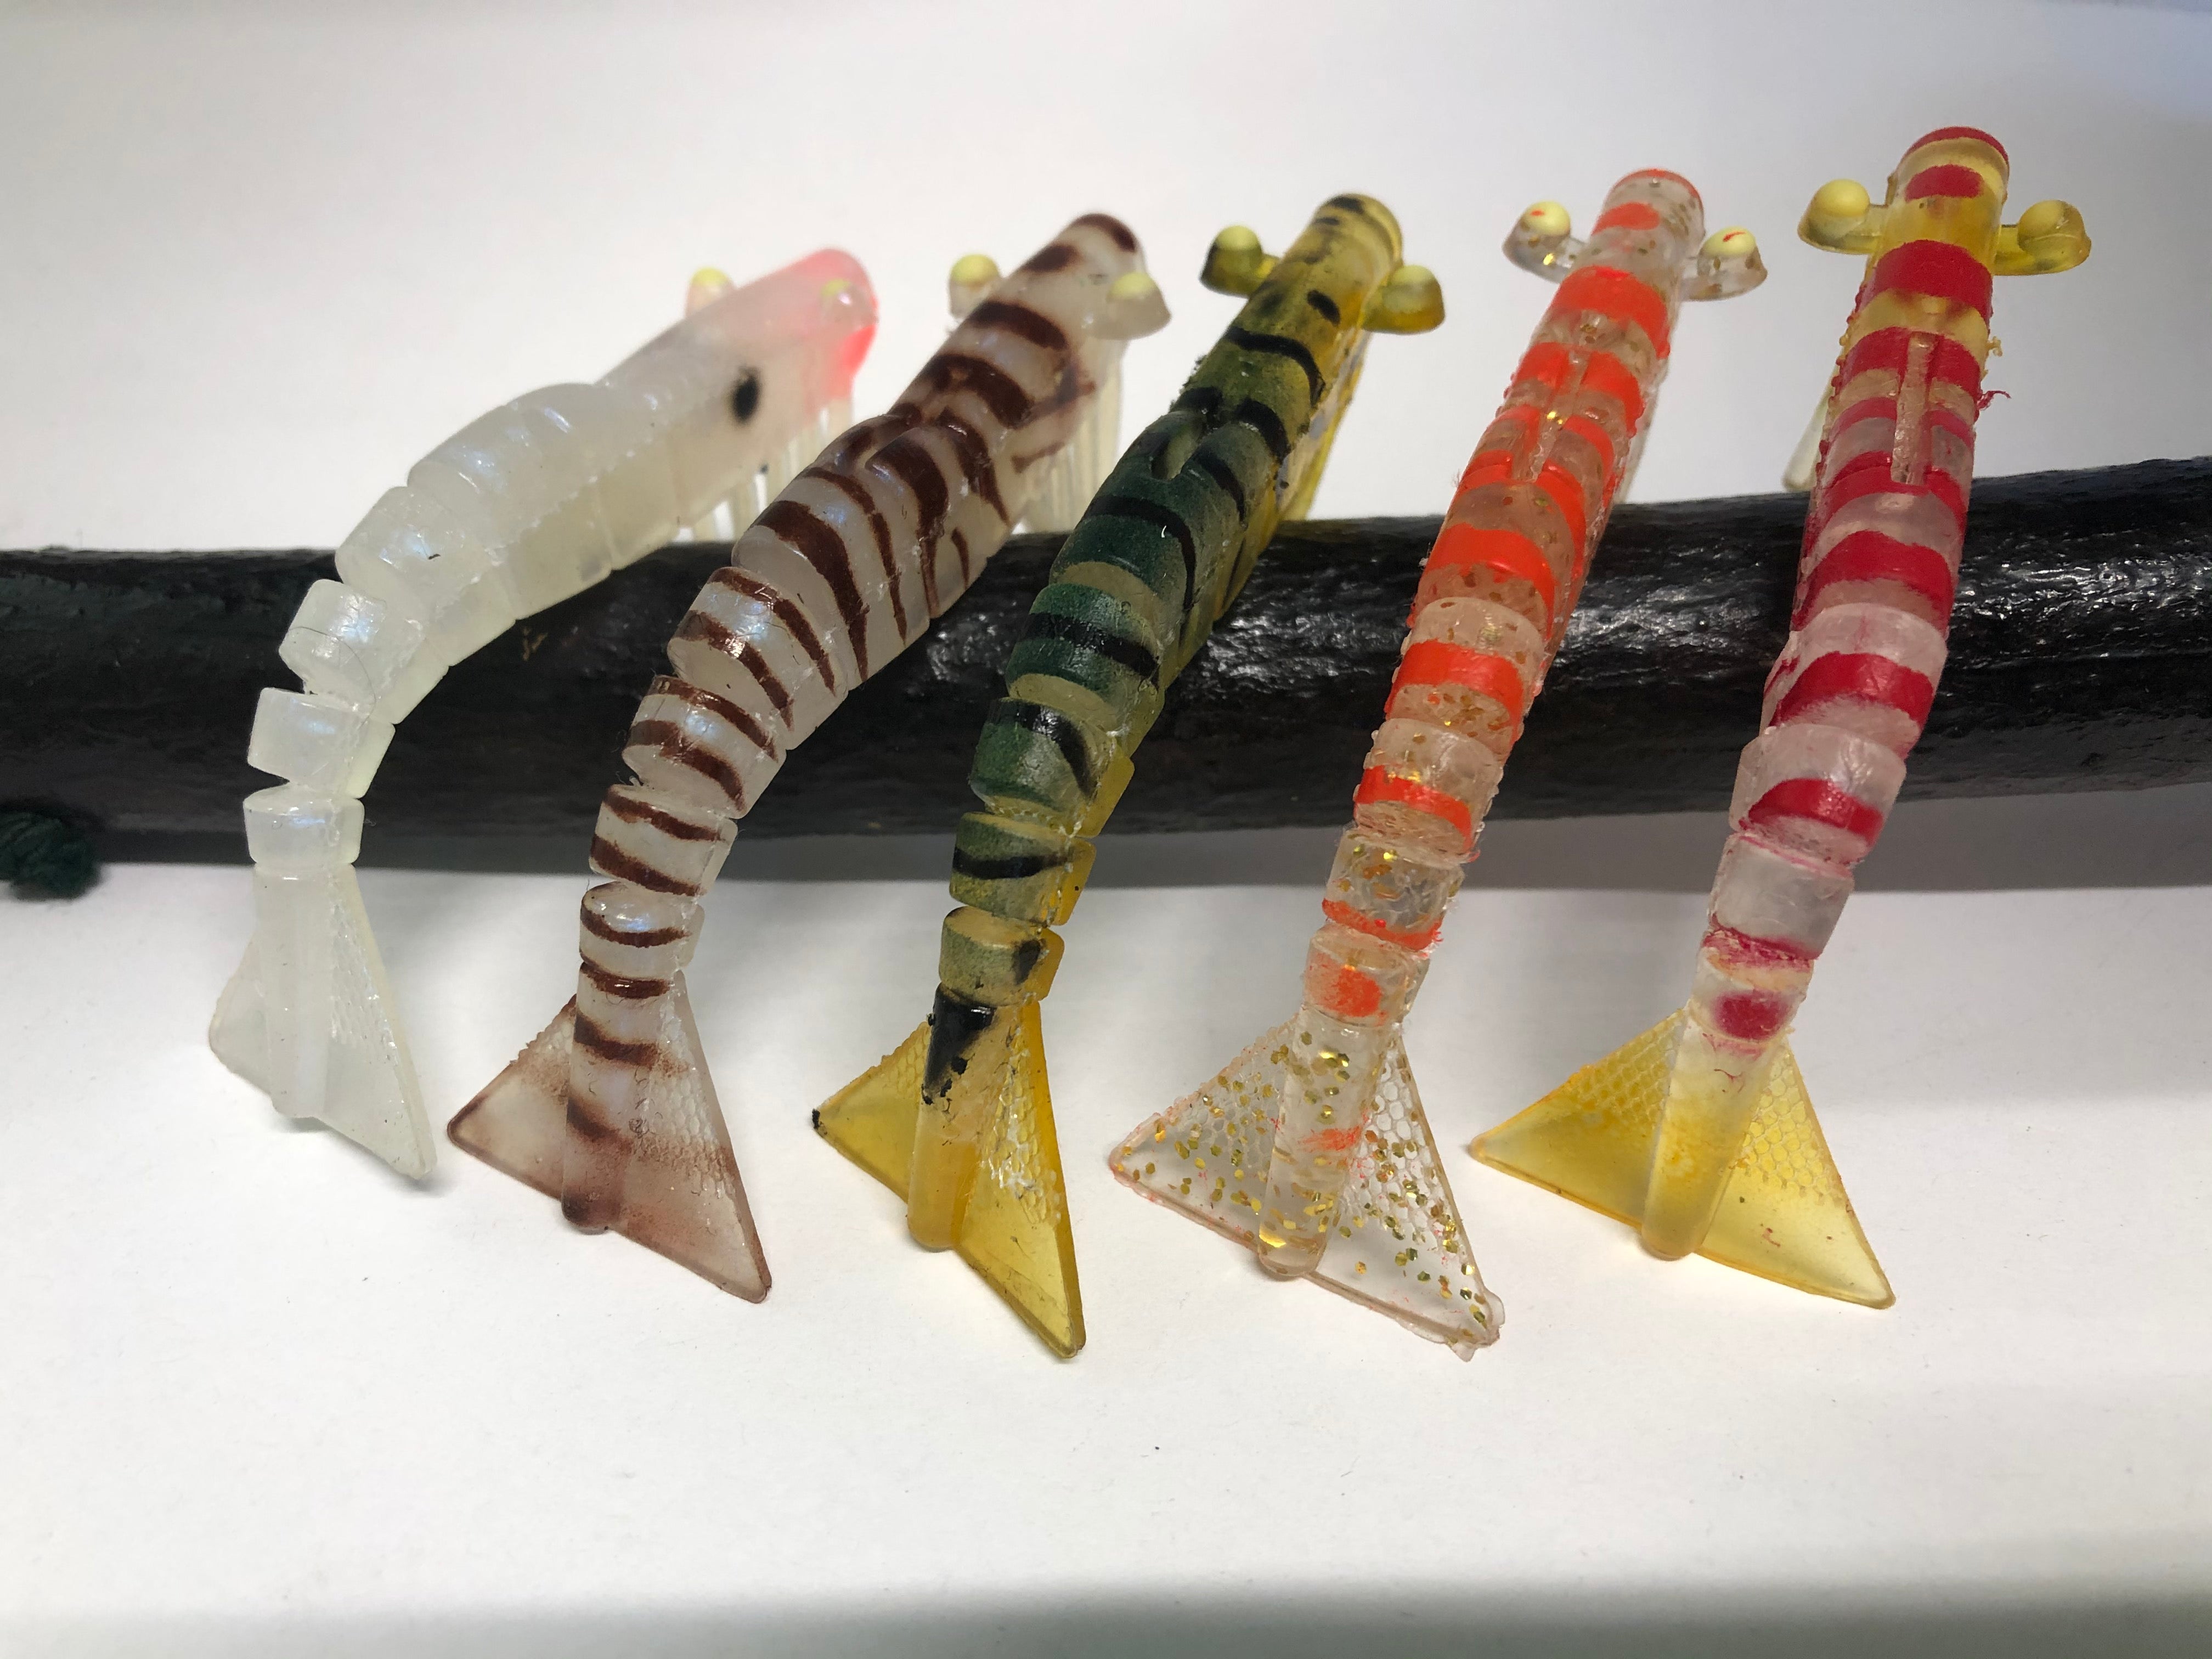 5 x 90mm Kevlar Live Shrimp Elaz-tec Soft Plastic Prawns – Tight